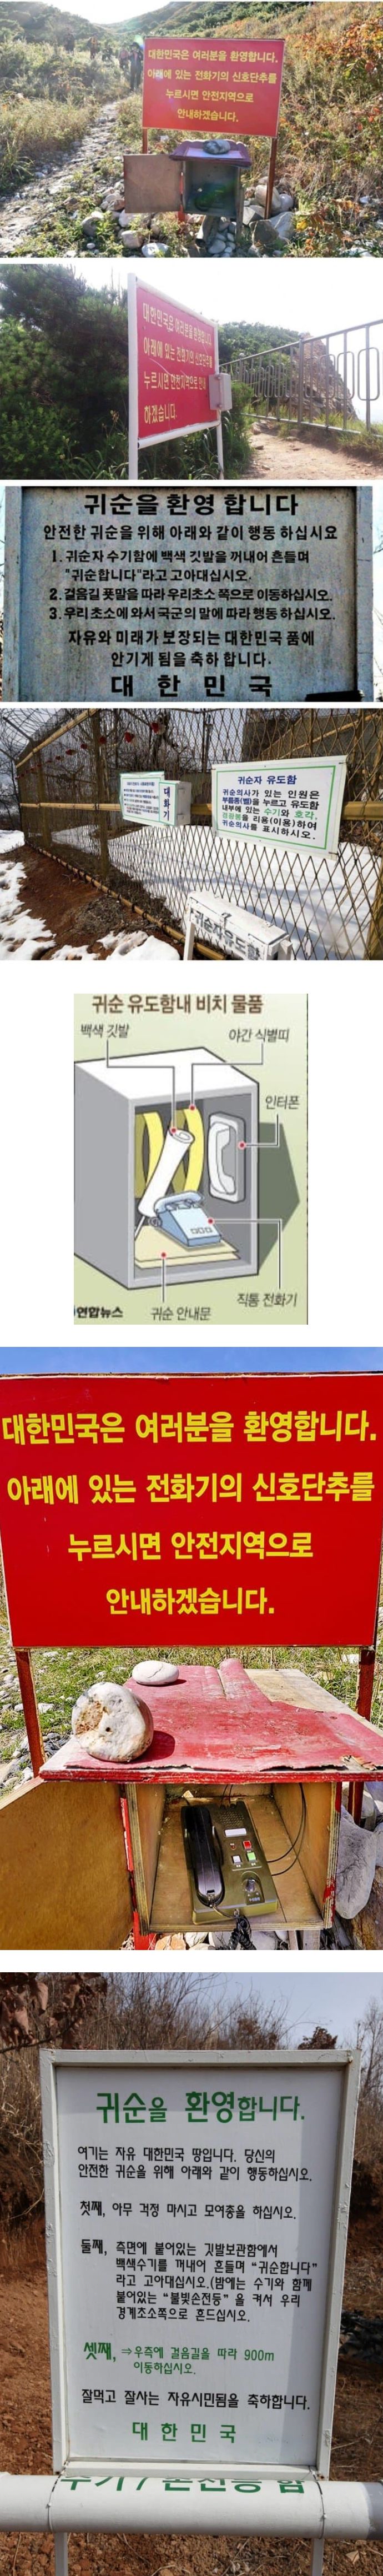 대한민국 귀순 표지판.jpg